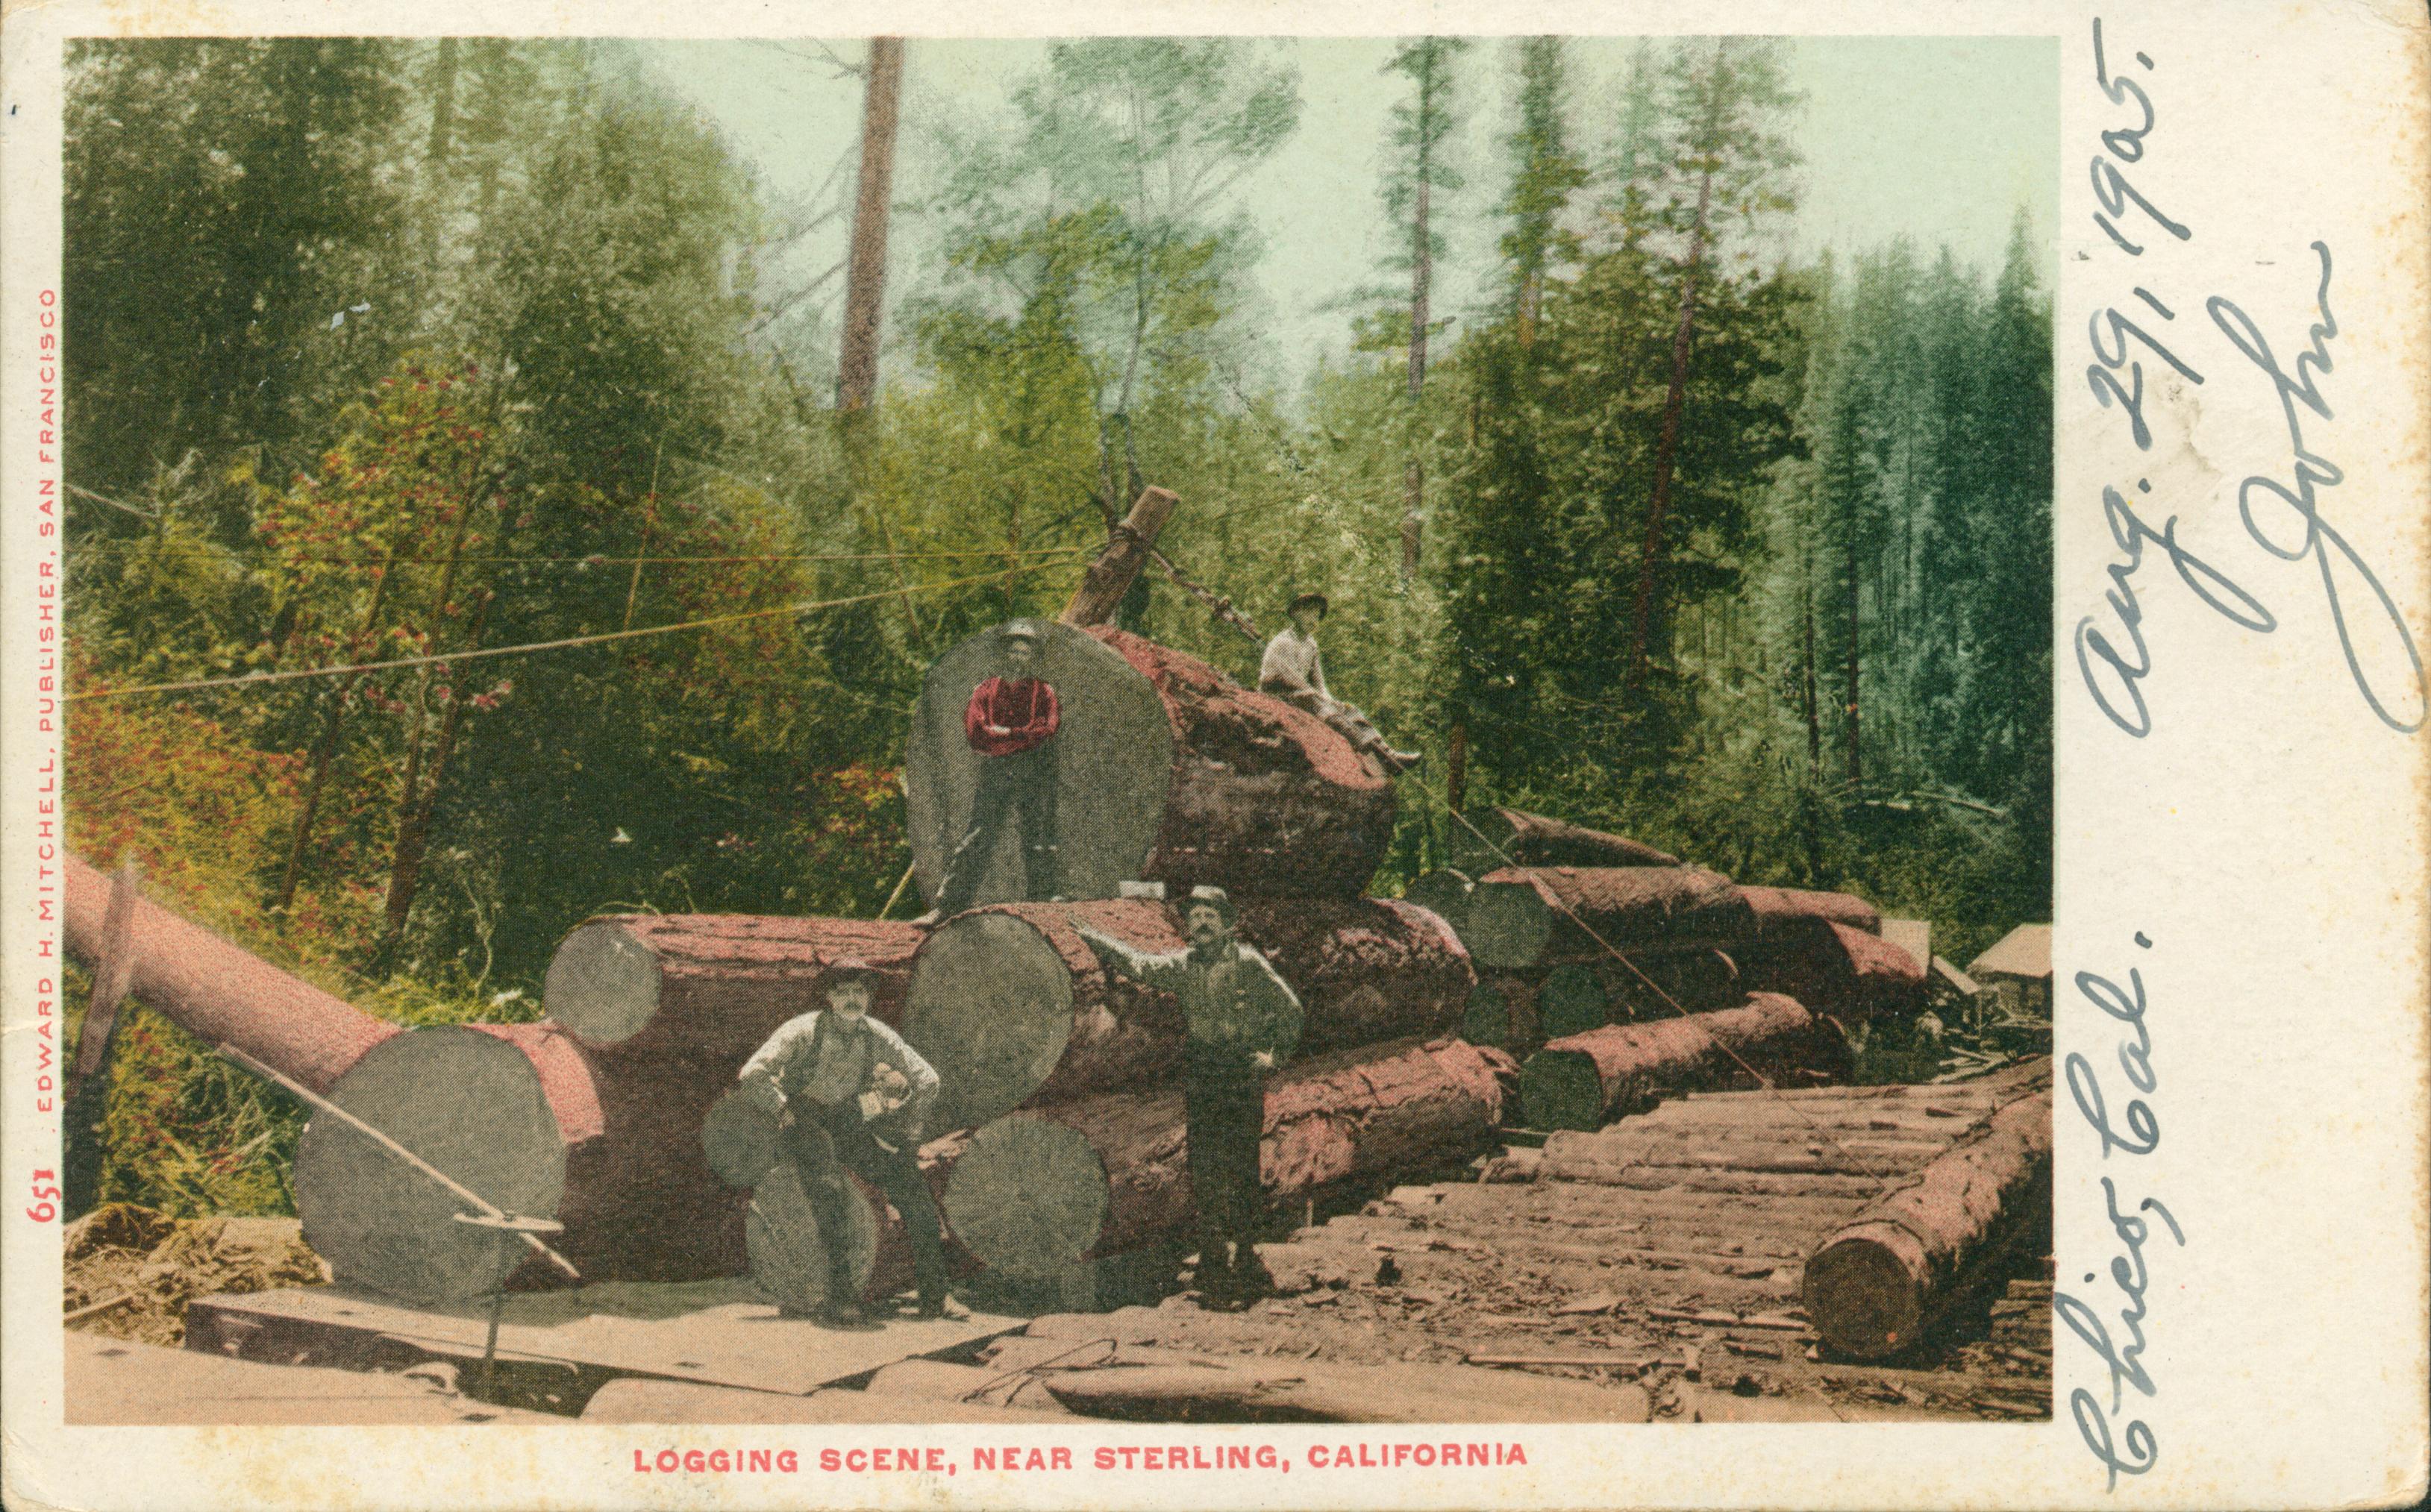 Shows several lumberjacks posed around logs